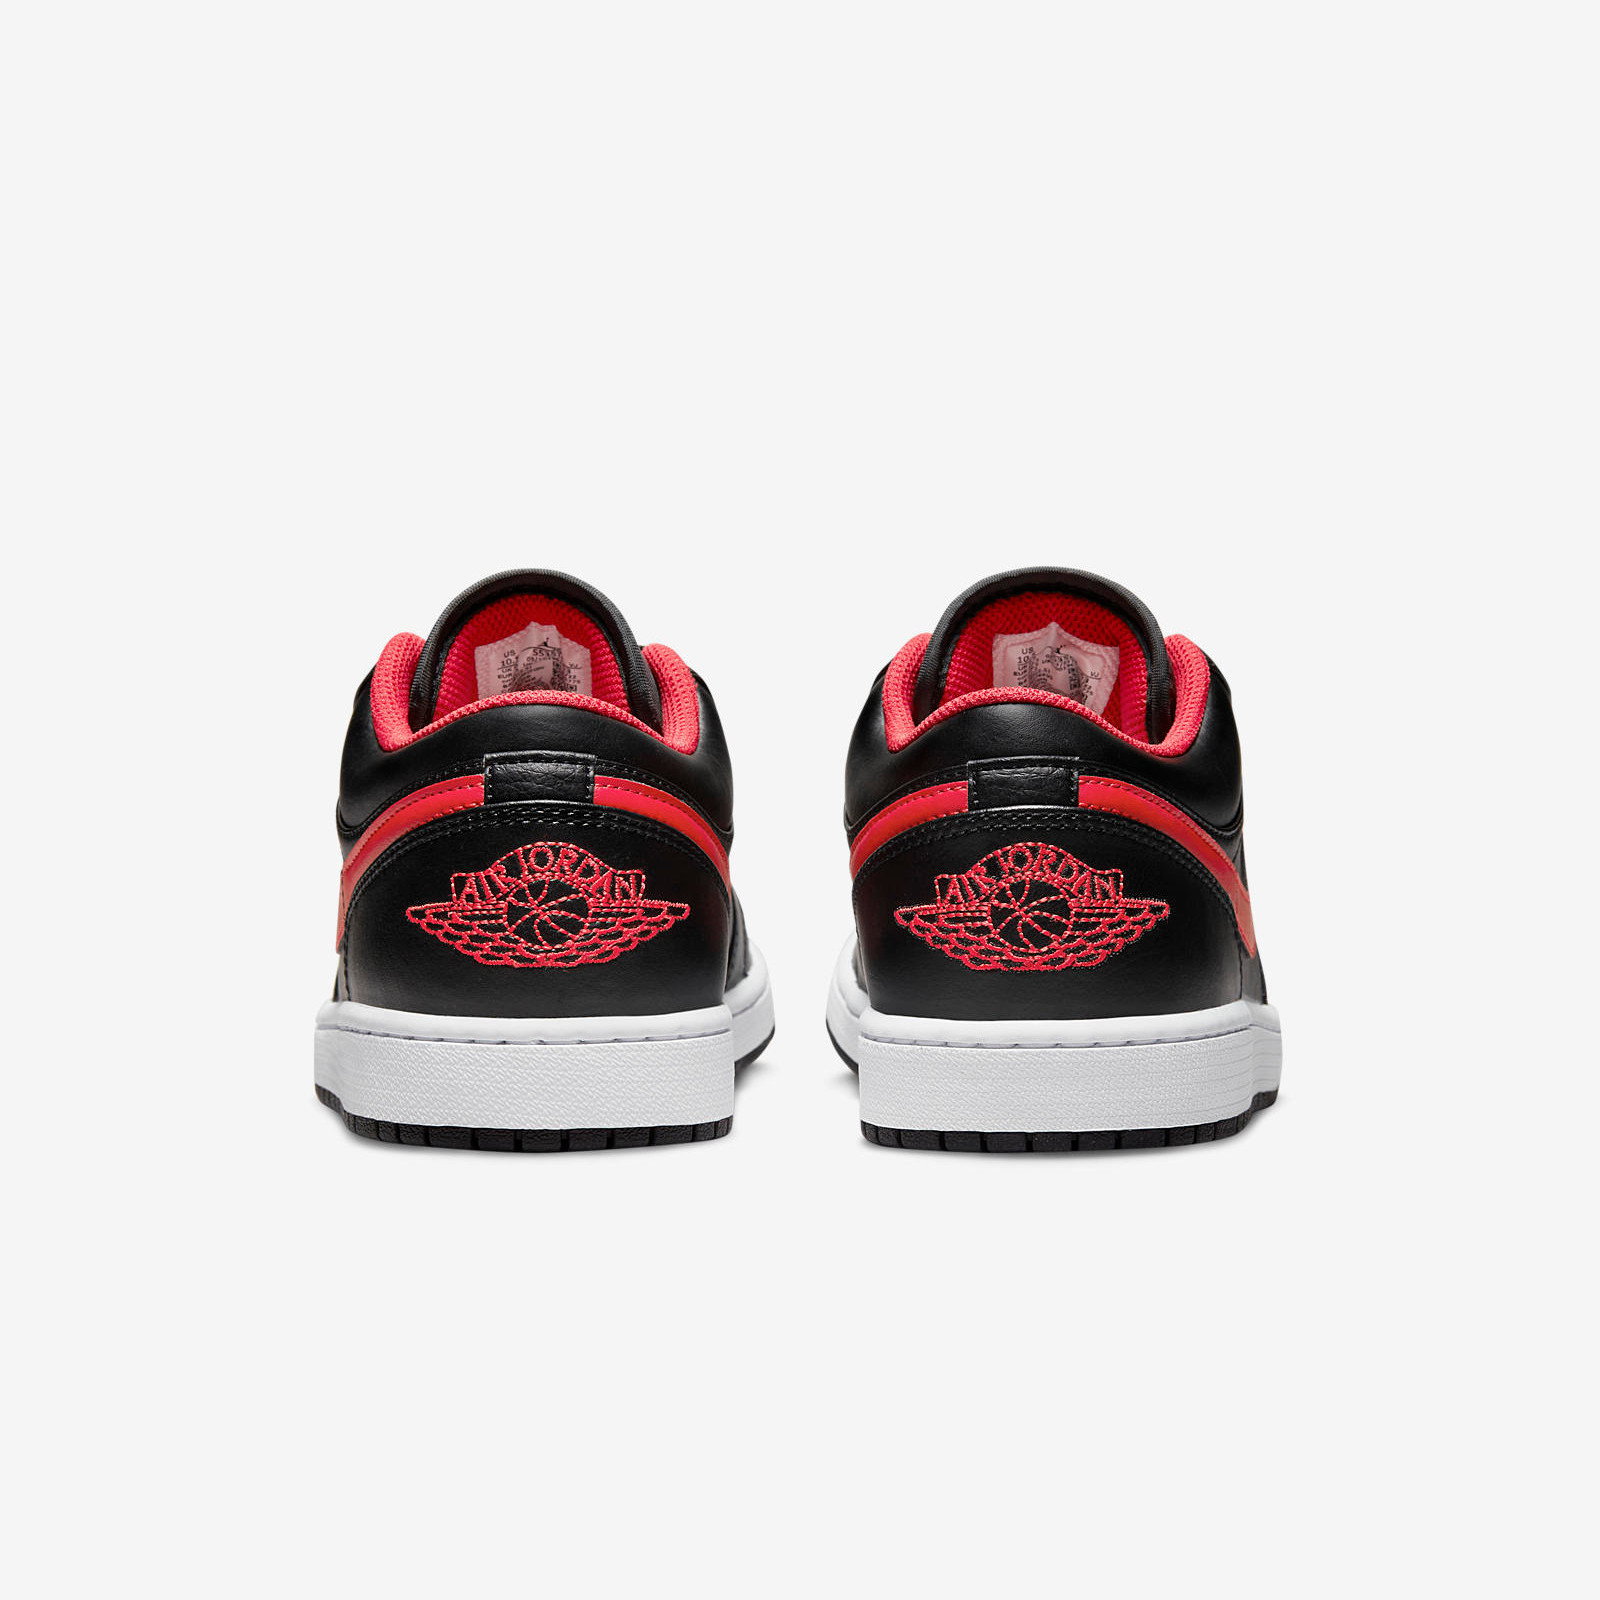 Air Jordan 1 Low
Black / Fire Red